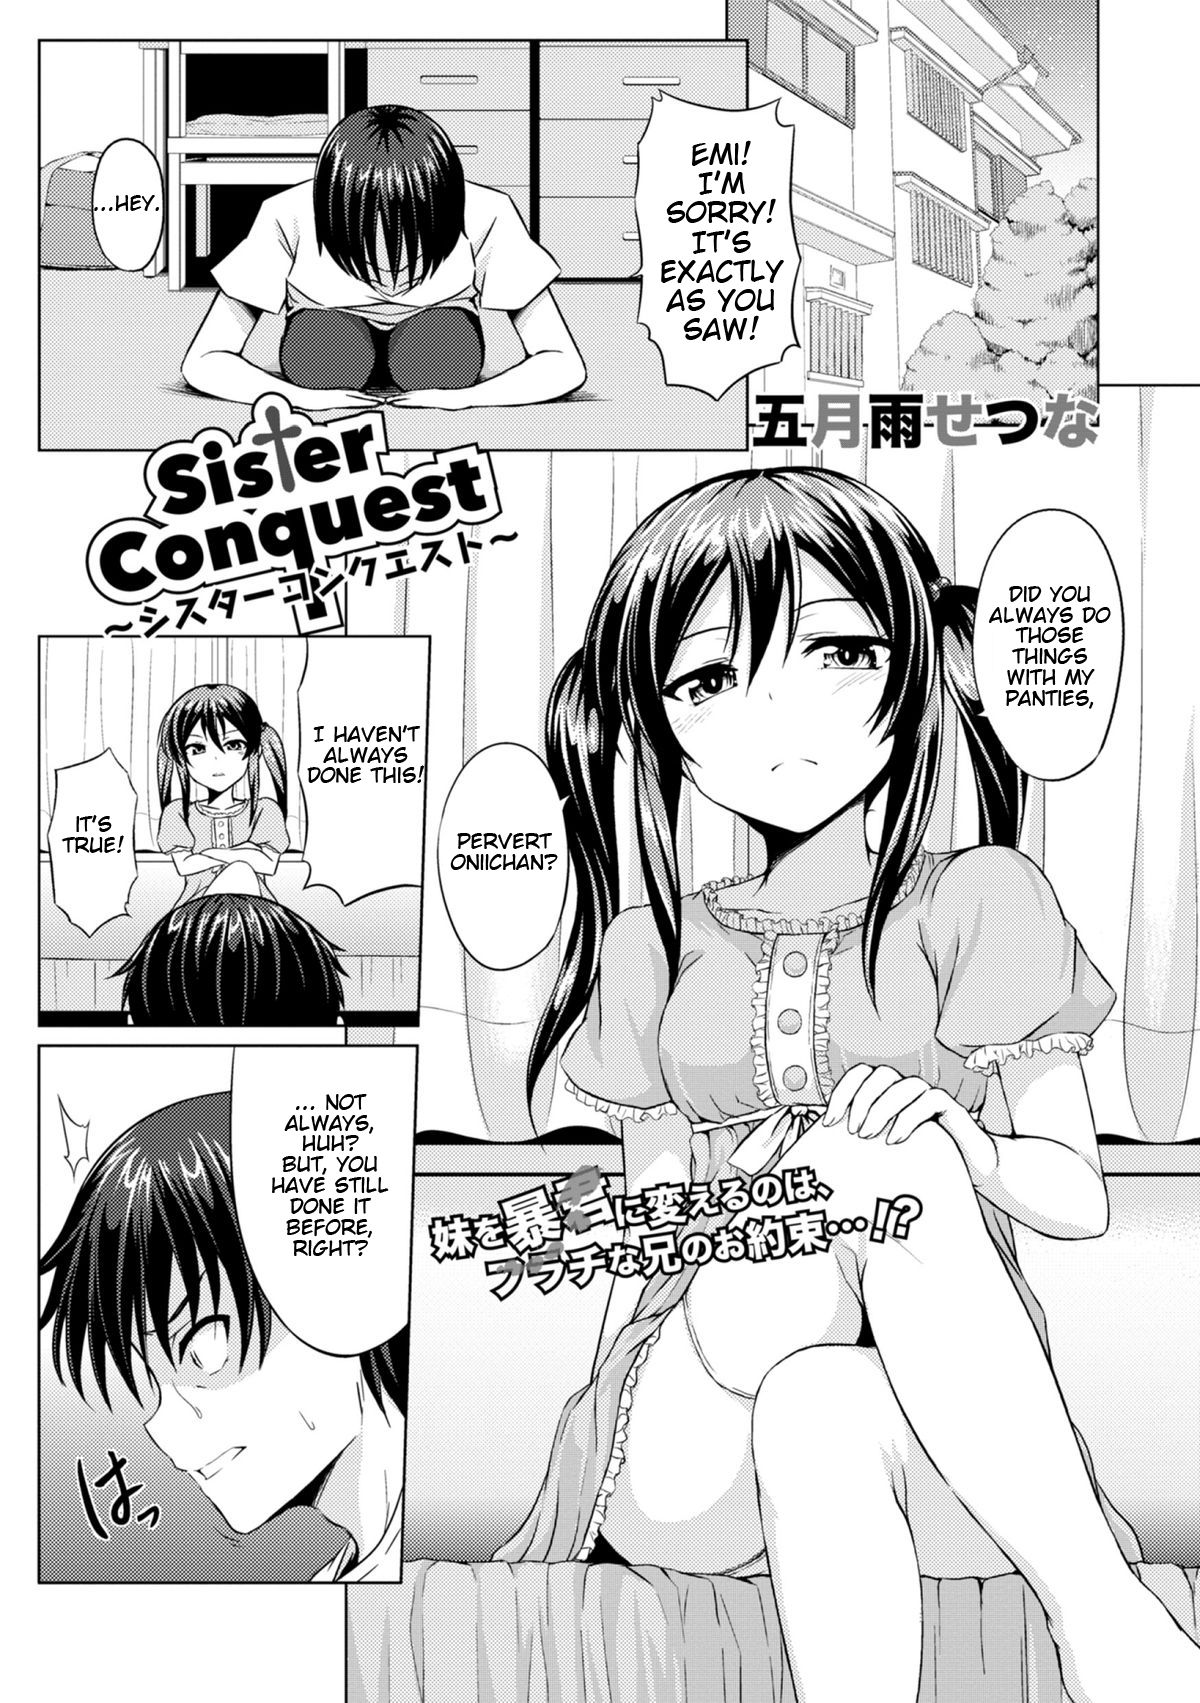 Read Sister Conquest (COMIC Europa 2014-11) English Hentai porns - Manga an...